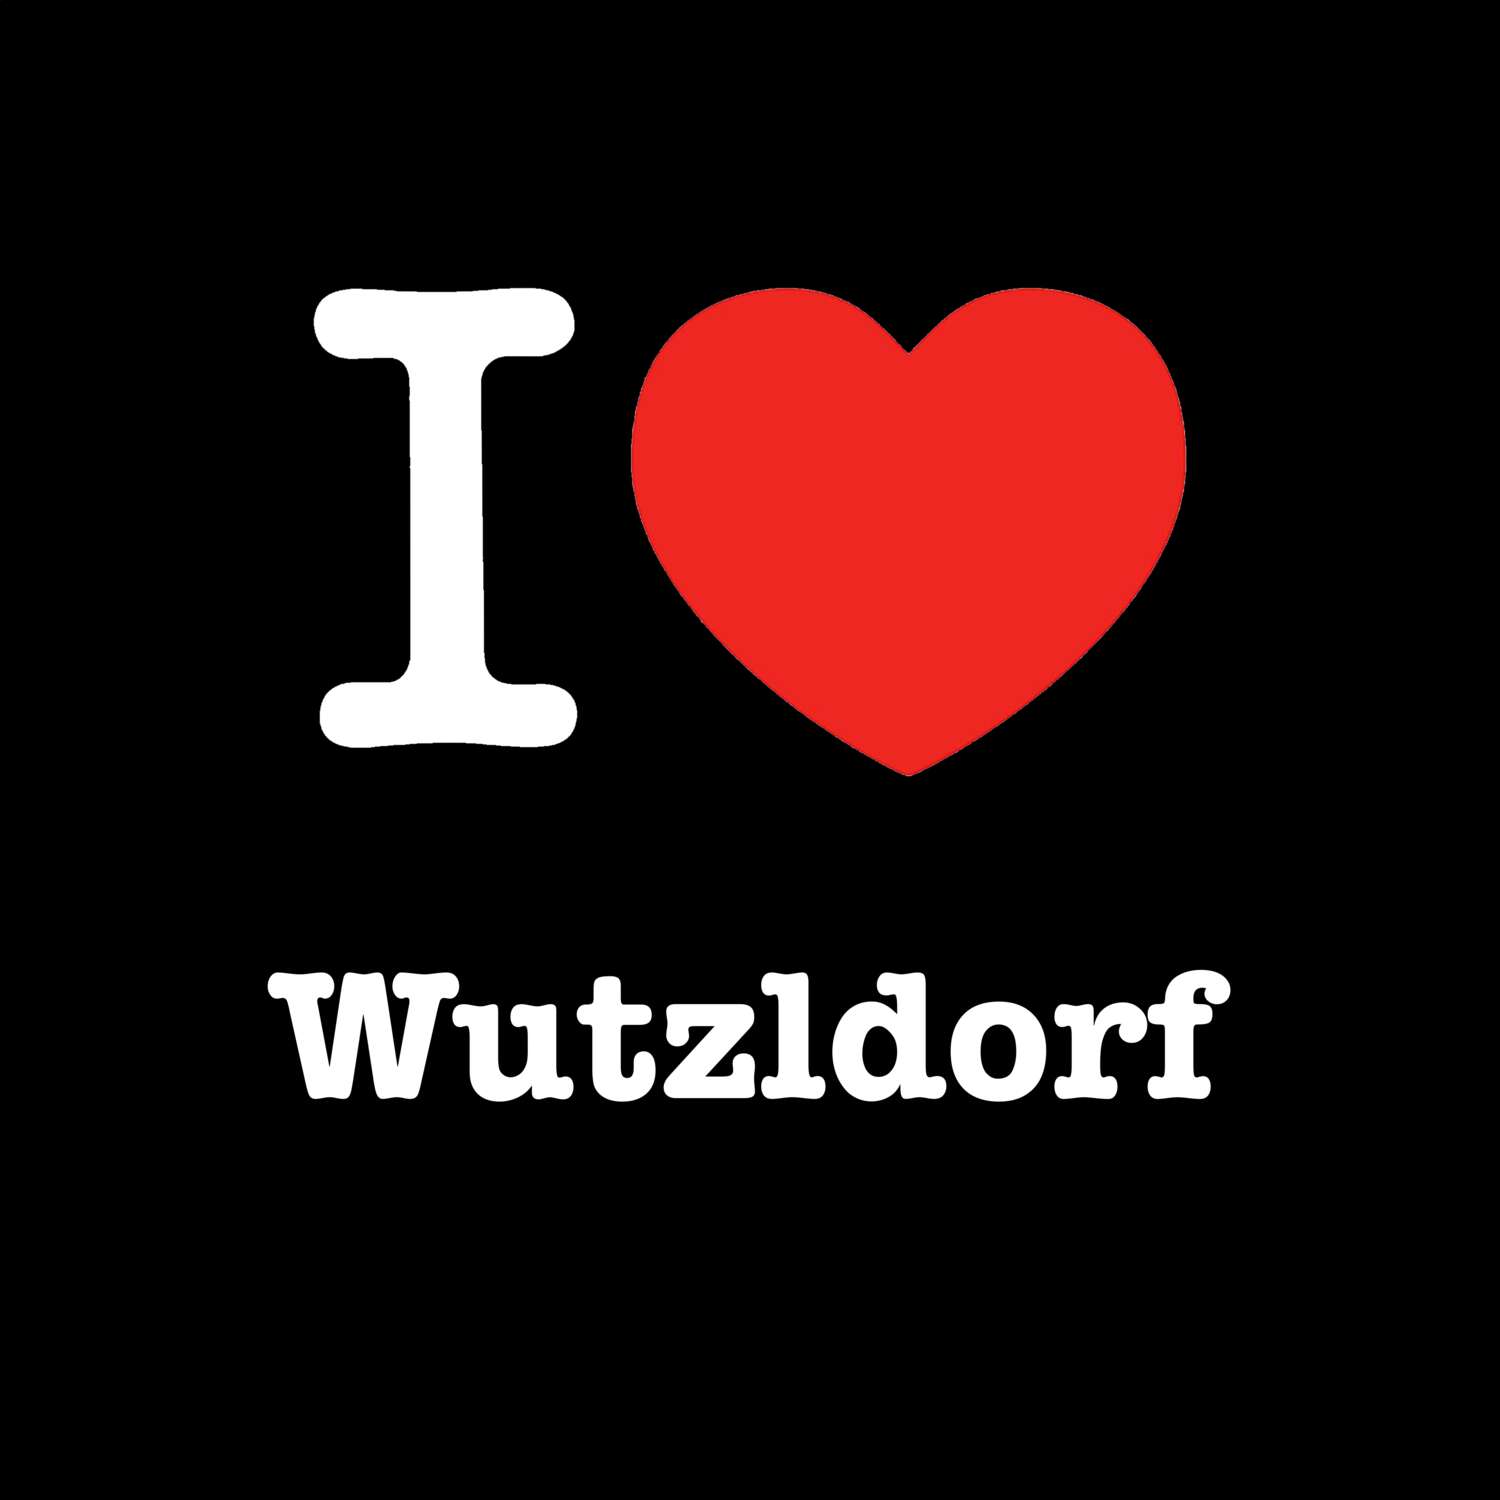 Wutzldorf T-Shirt »I love«